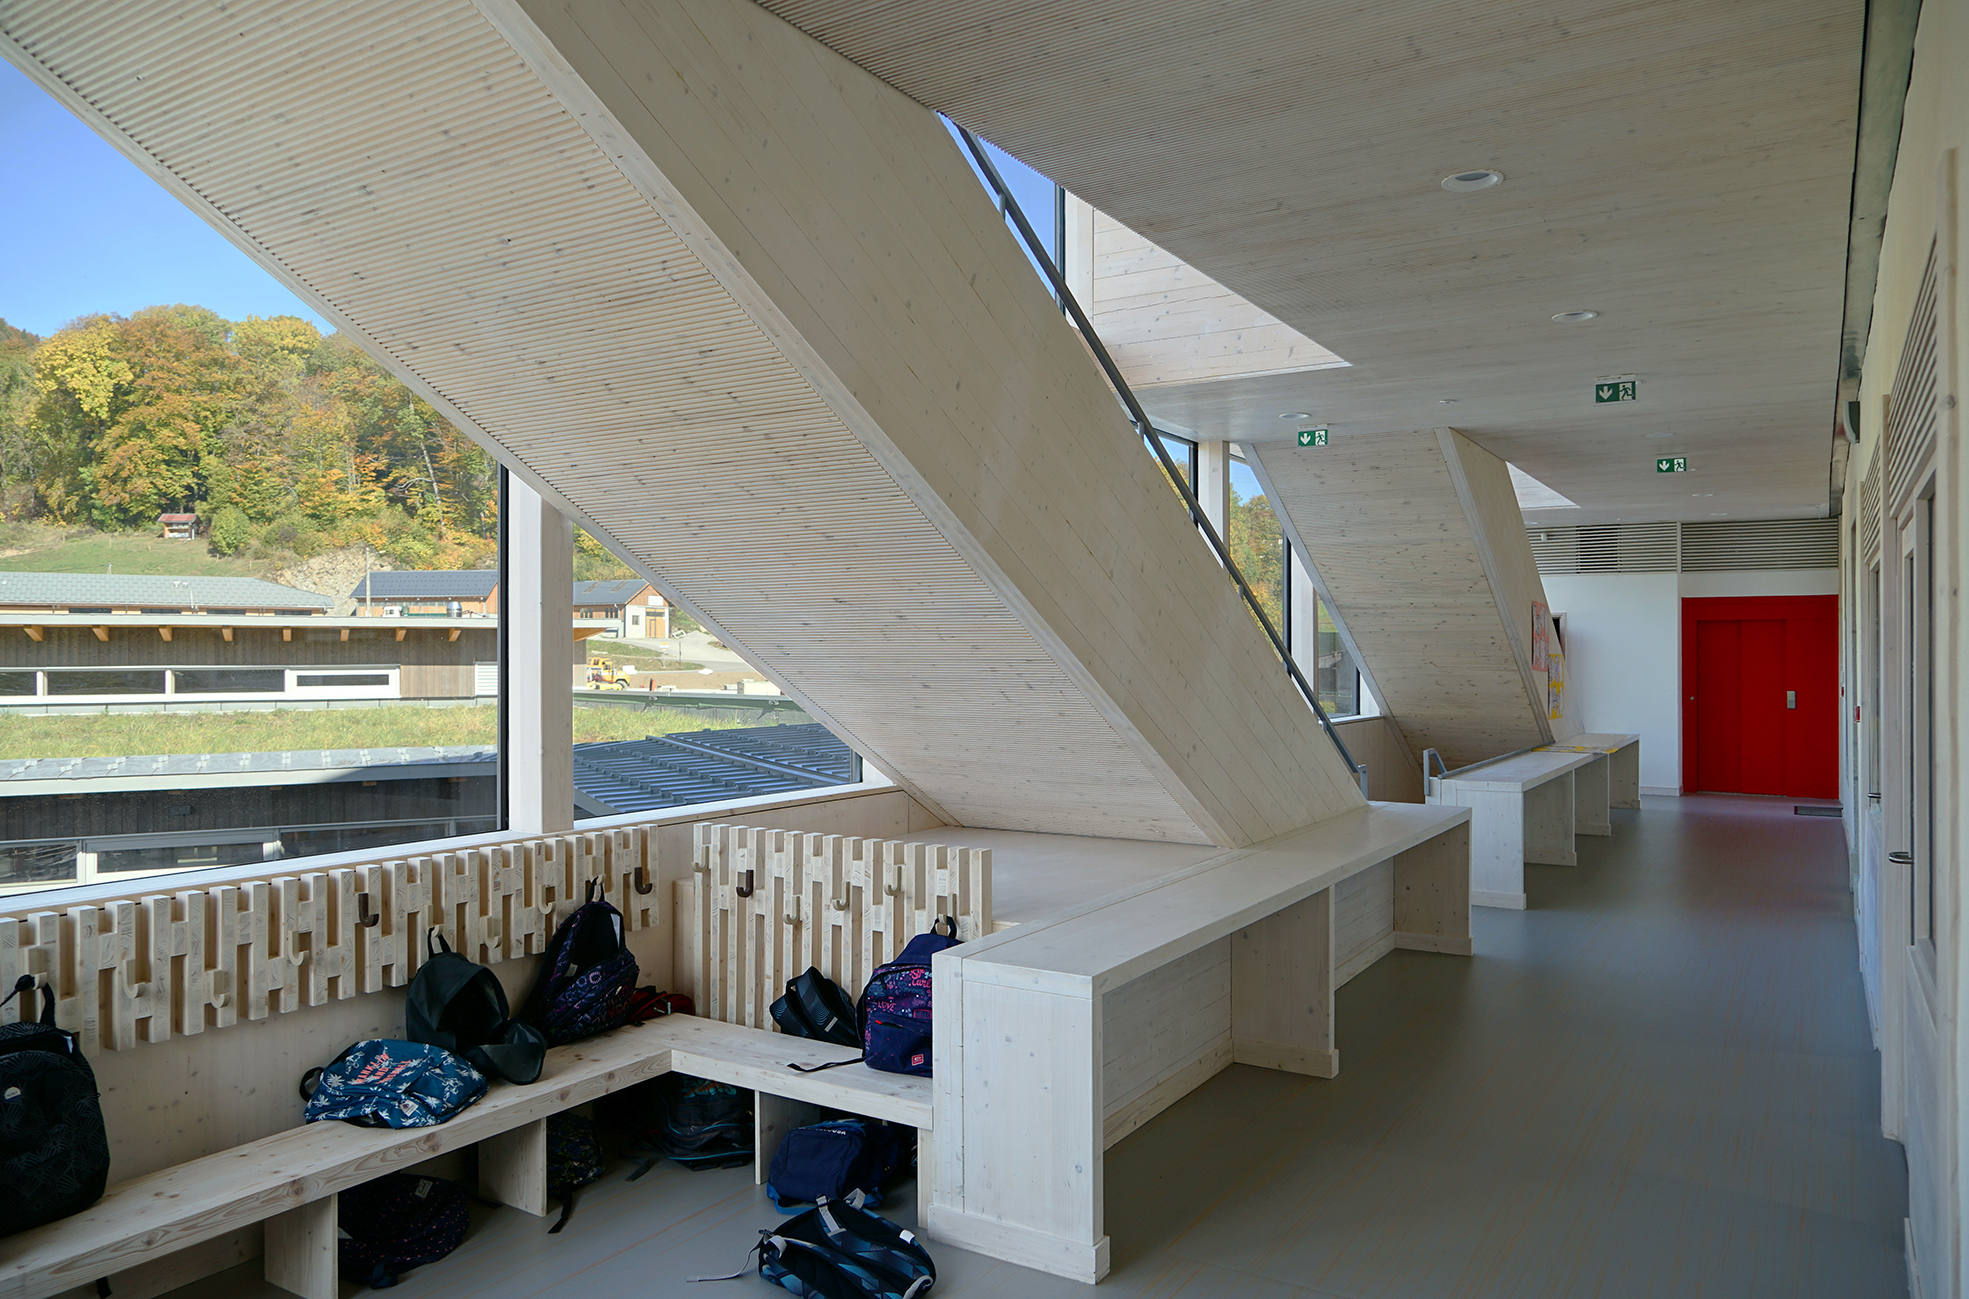 Ecole de BOGEVE | Architectes: GUYOT Nelly - VAUDAUX-RUTH Bernard - POULET Olivier |